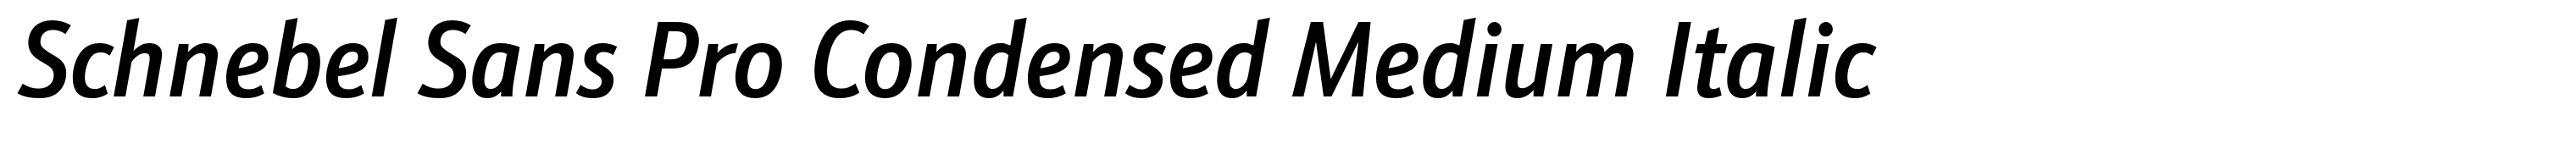 Schnebel Sans Pro Condensed Medium Italic